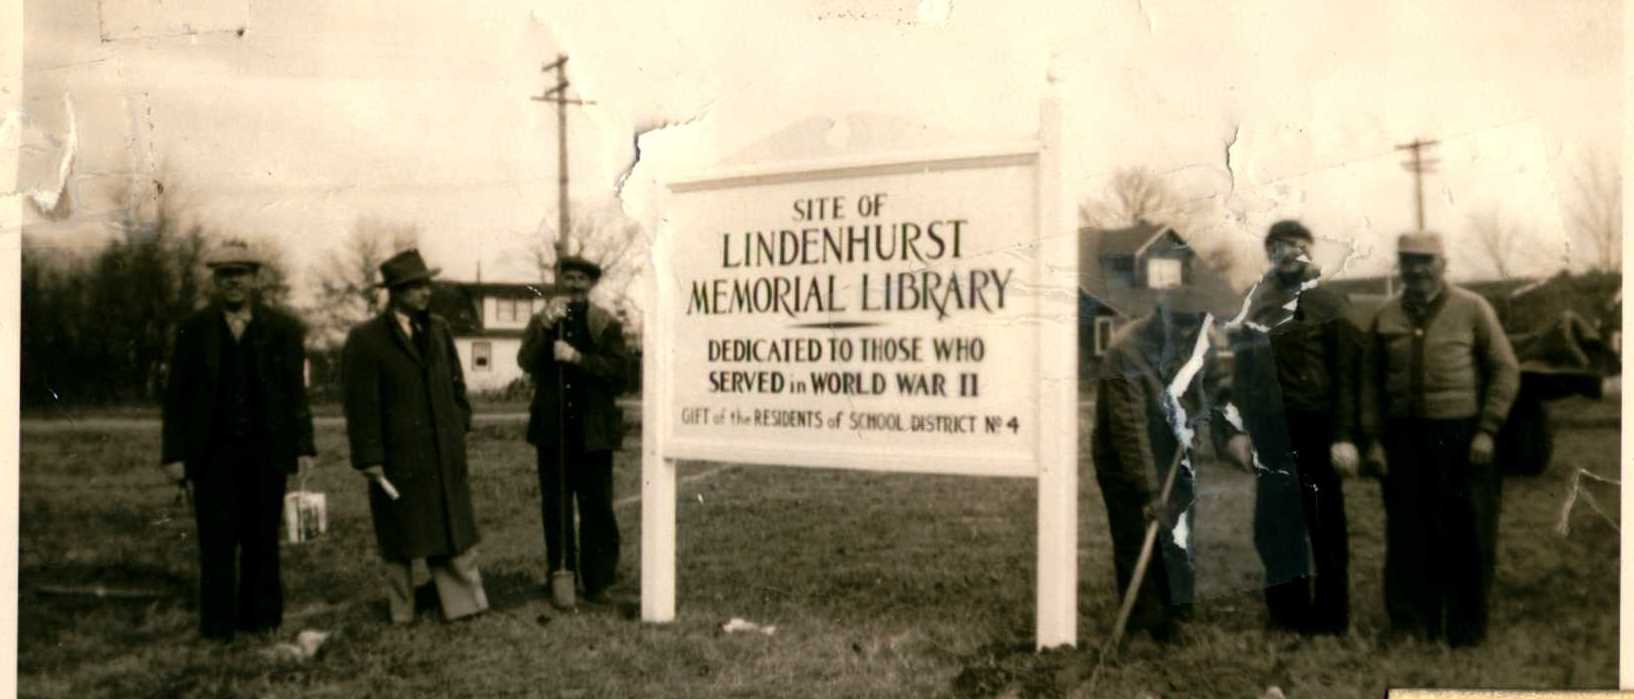 Lindenhurst Memorial Library dedication. 